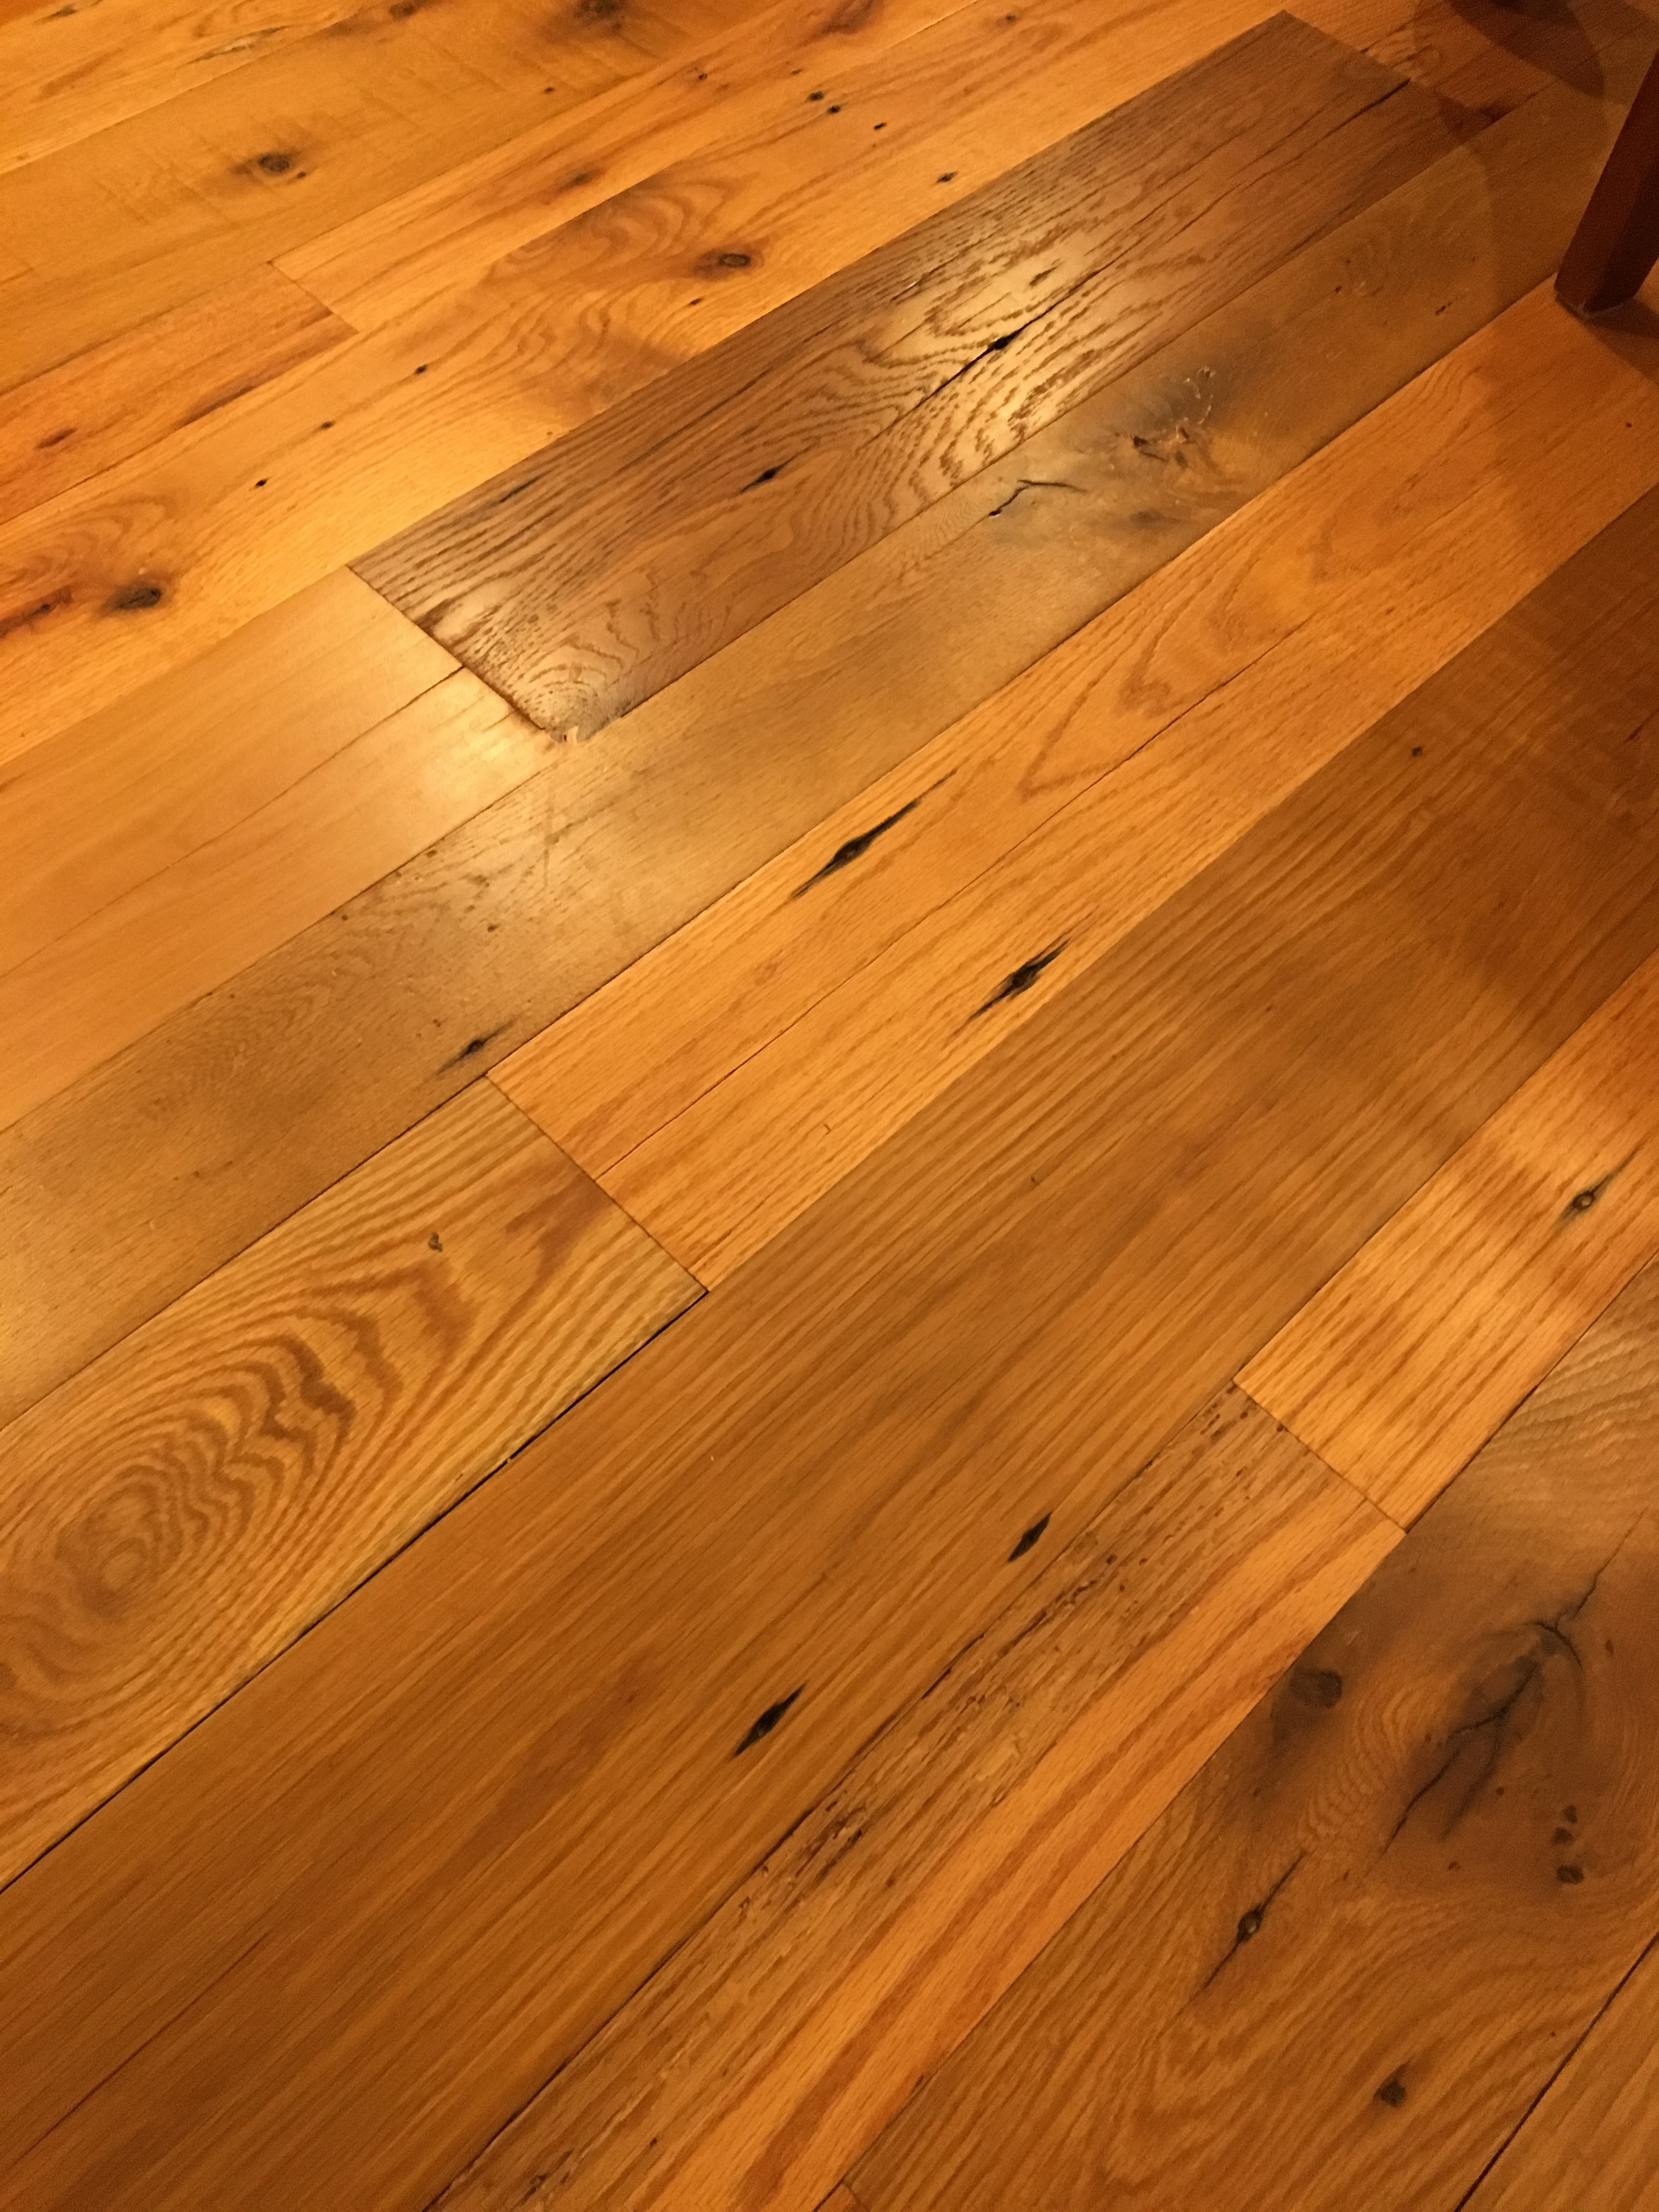 28 Popular Hardwood Floor Colors 2015 2024 free download hardwood floor colors 2015 of photo gallery tennessee wood flooring in cantilever plank1 1